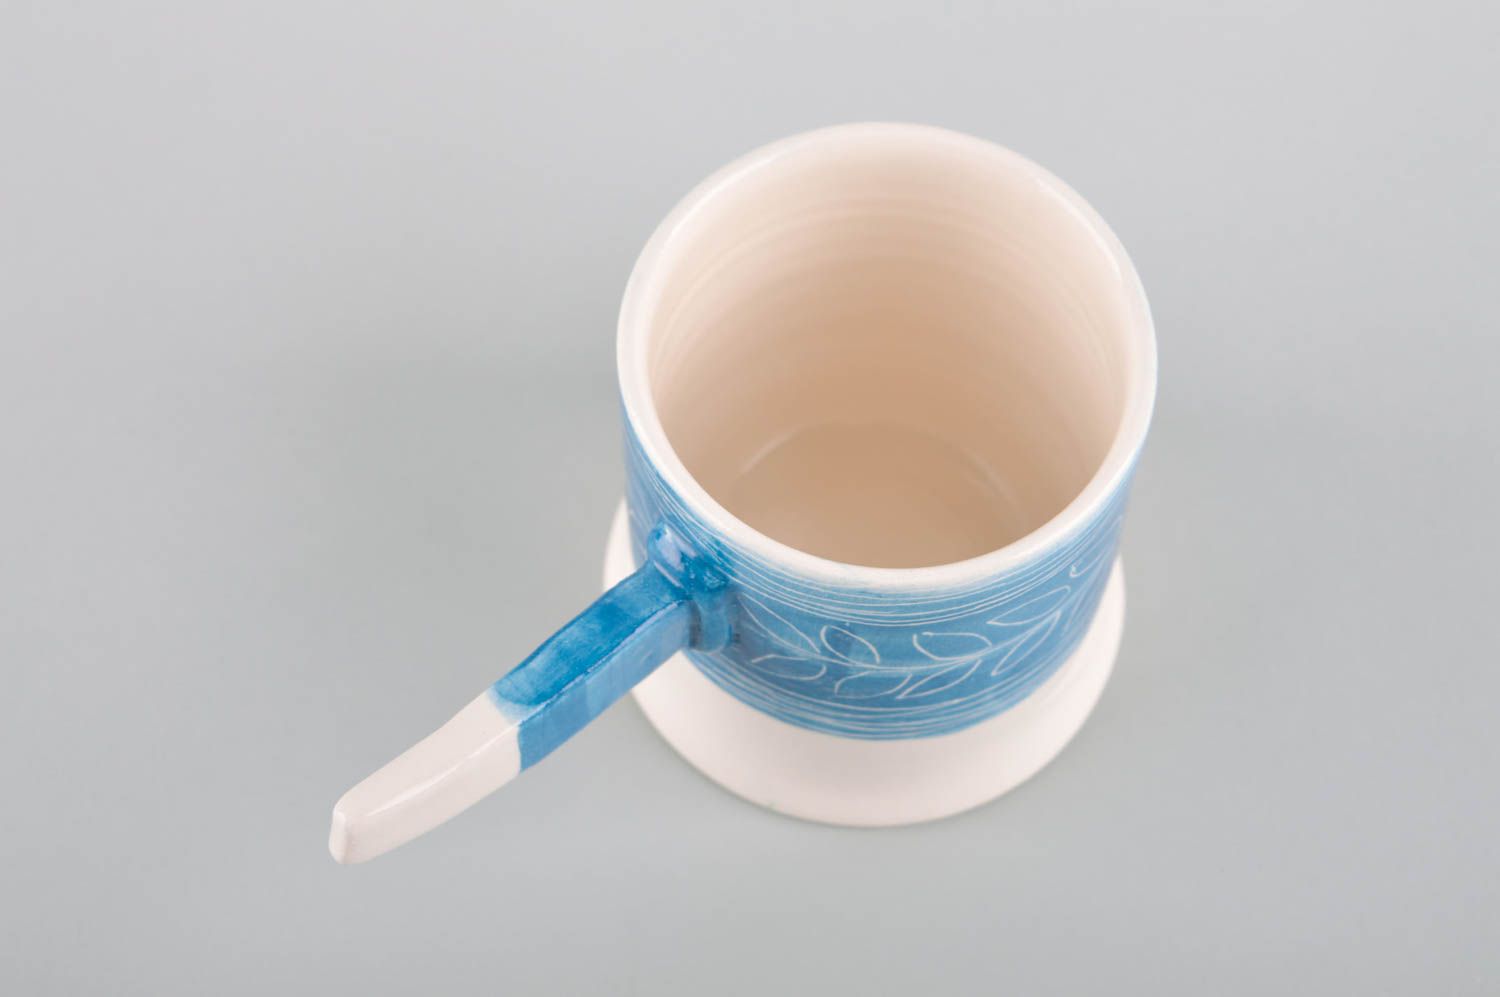 Глиняная чашка ручной работы чайная чашка с росписью красивая посуда для чая фото 3